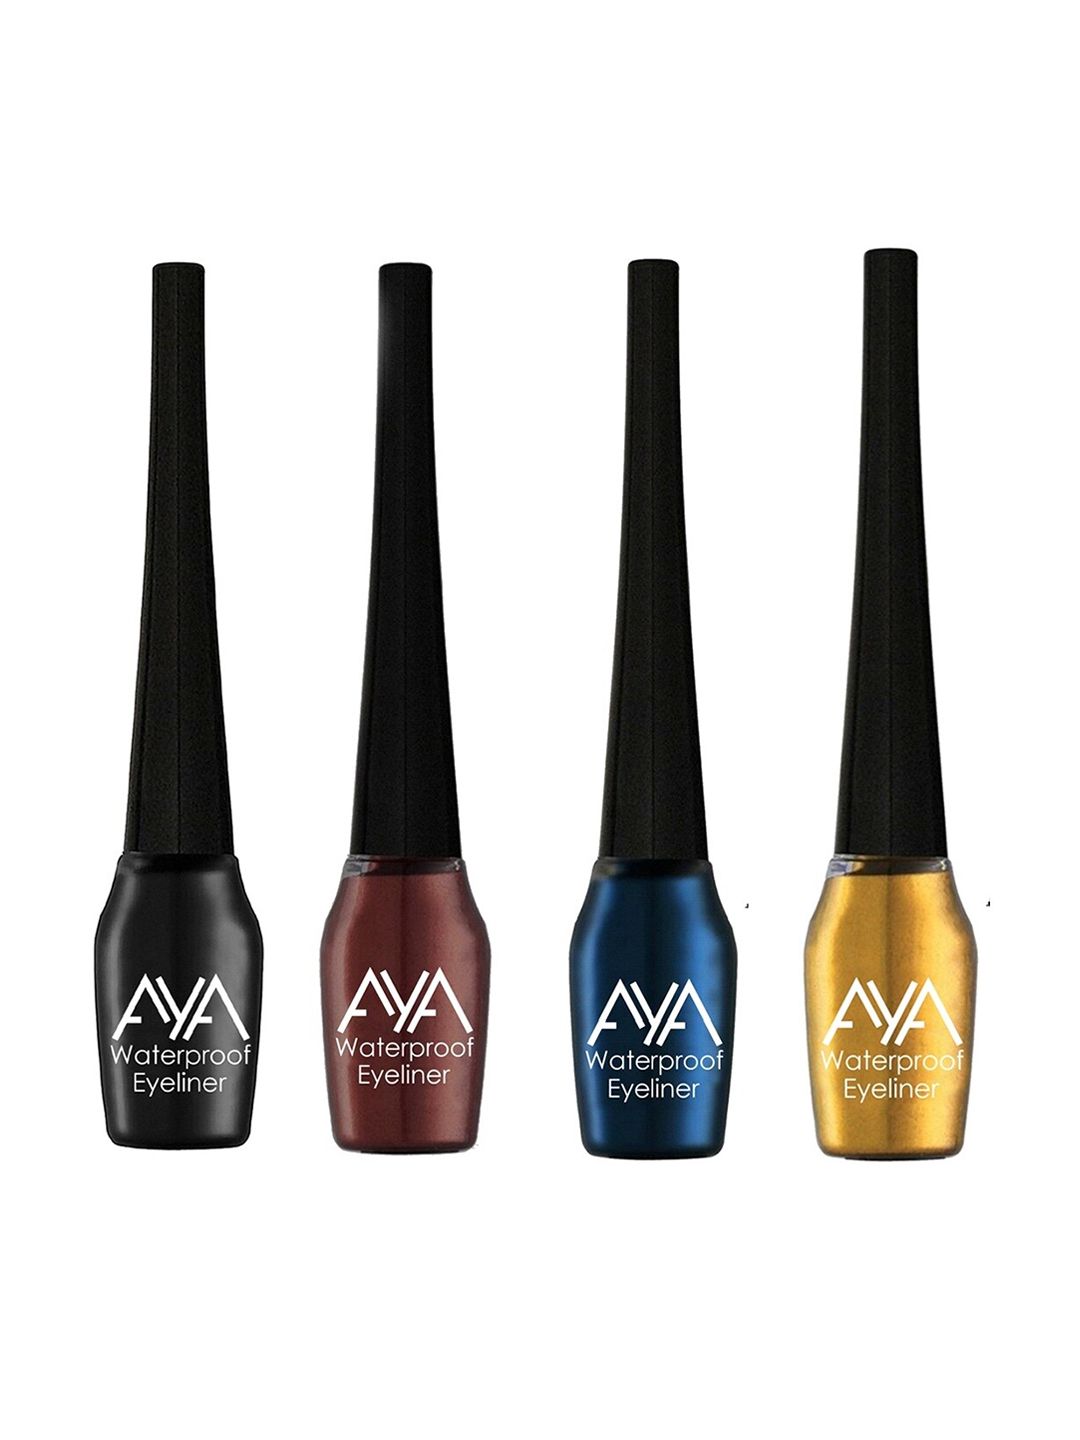 AYA Set of 4 Waterproof Eyeliner - Black, Blue, Brown & Golden - 5 ml each Price in India